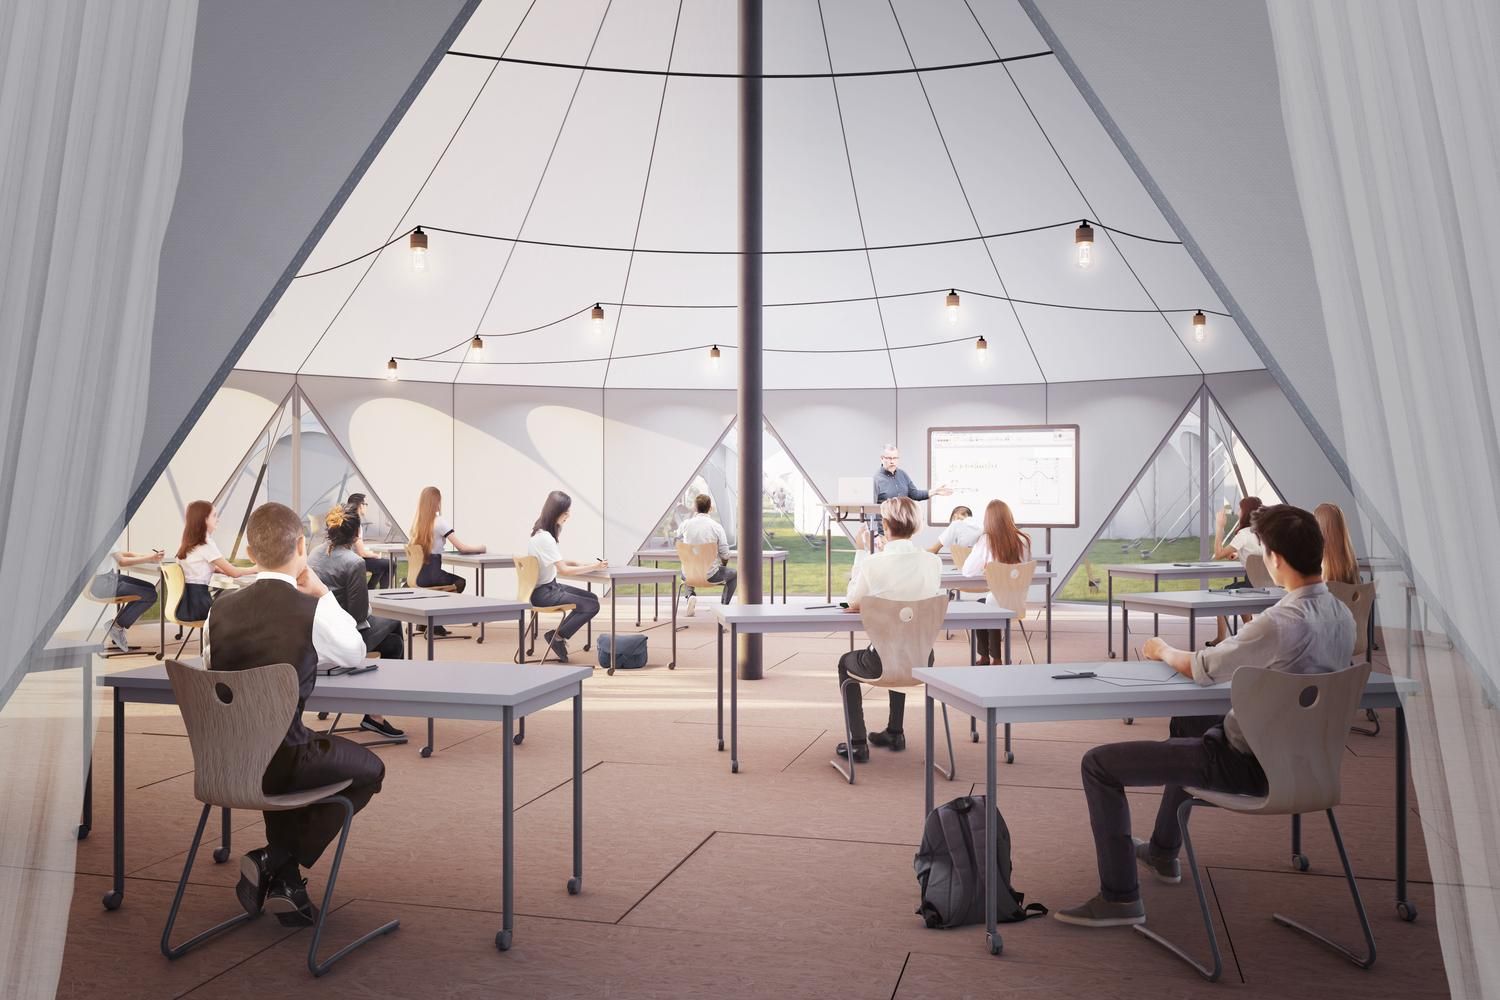 Обучение после карантина 2020, Лондон – проект школы в палатке